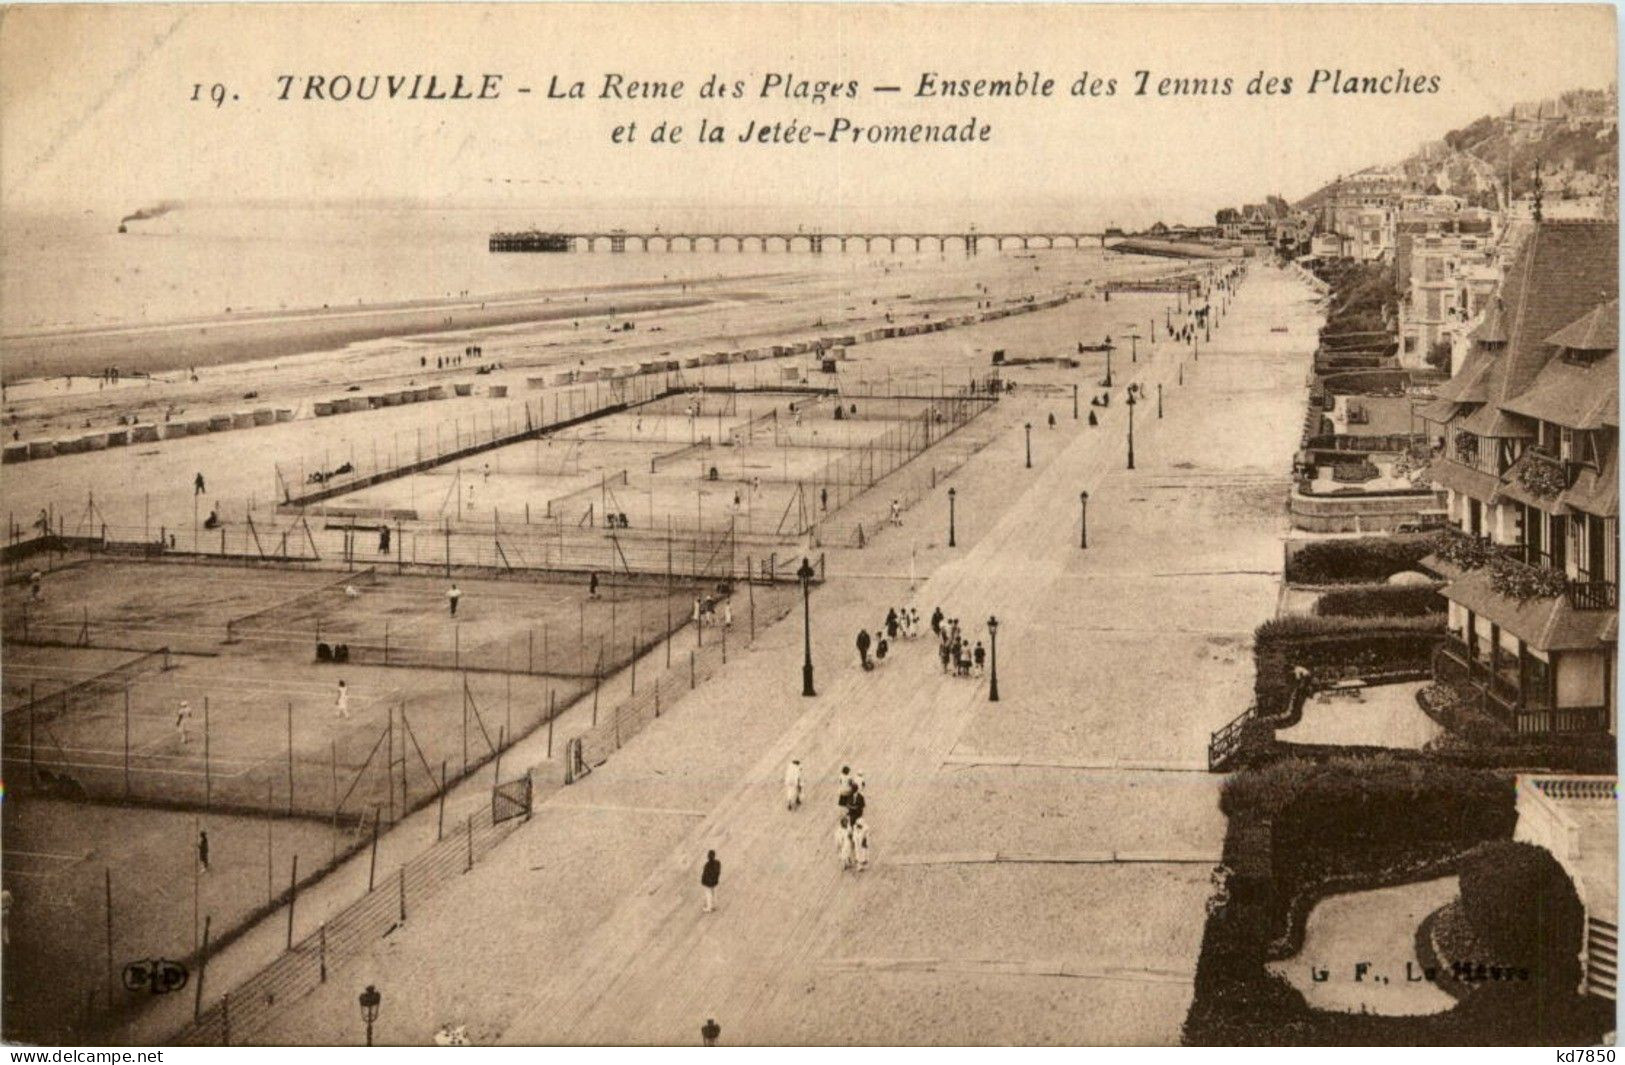 Trouville - Tennis - Trouville